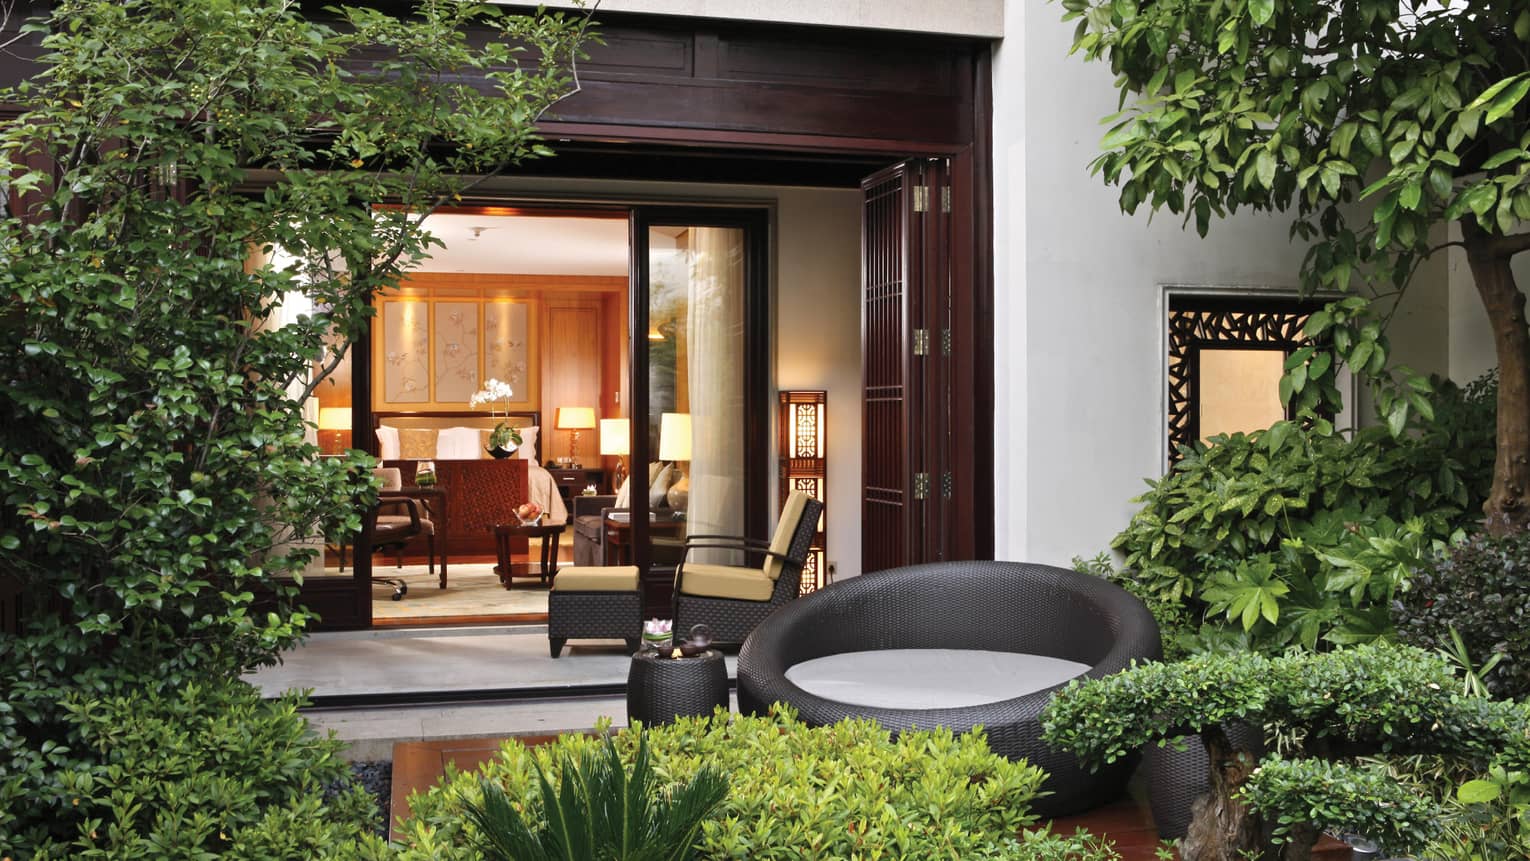 Grand Premier Room patio garden, large round black wicker chair, open villa door